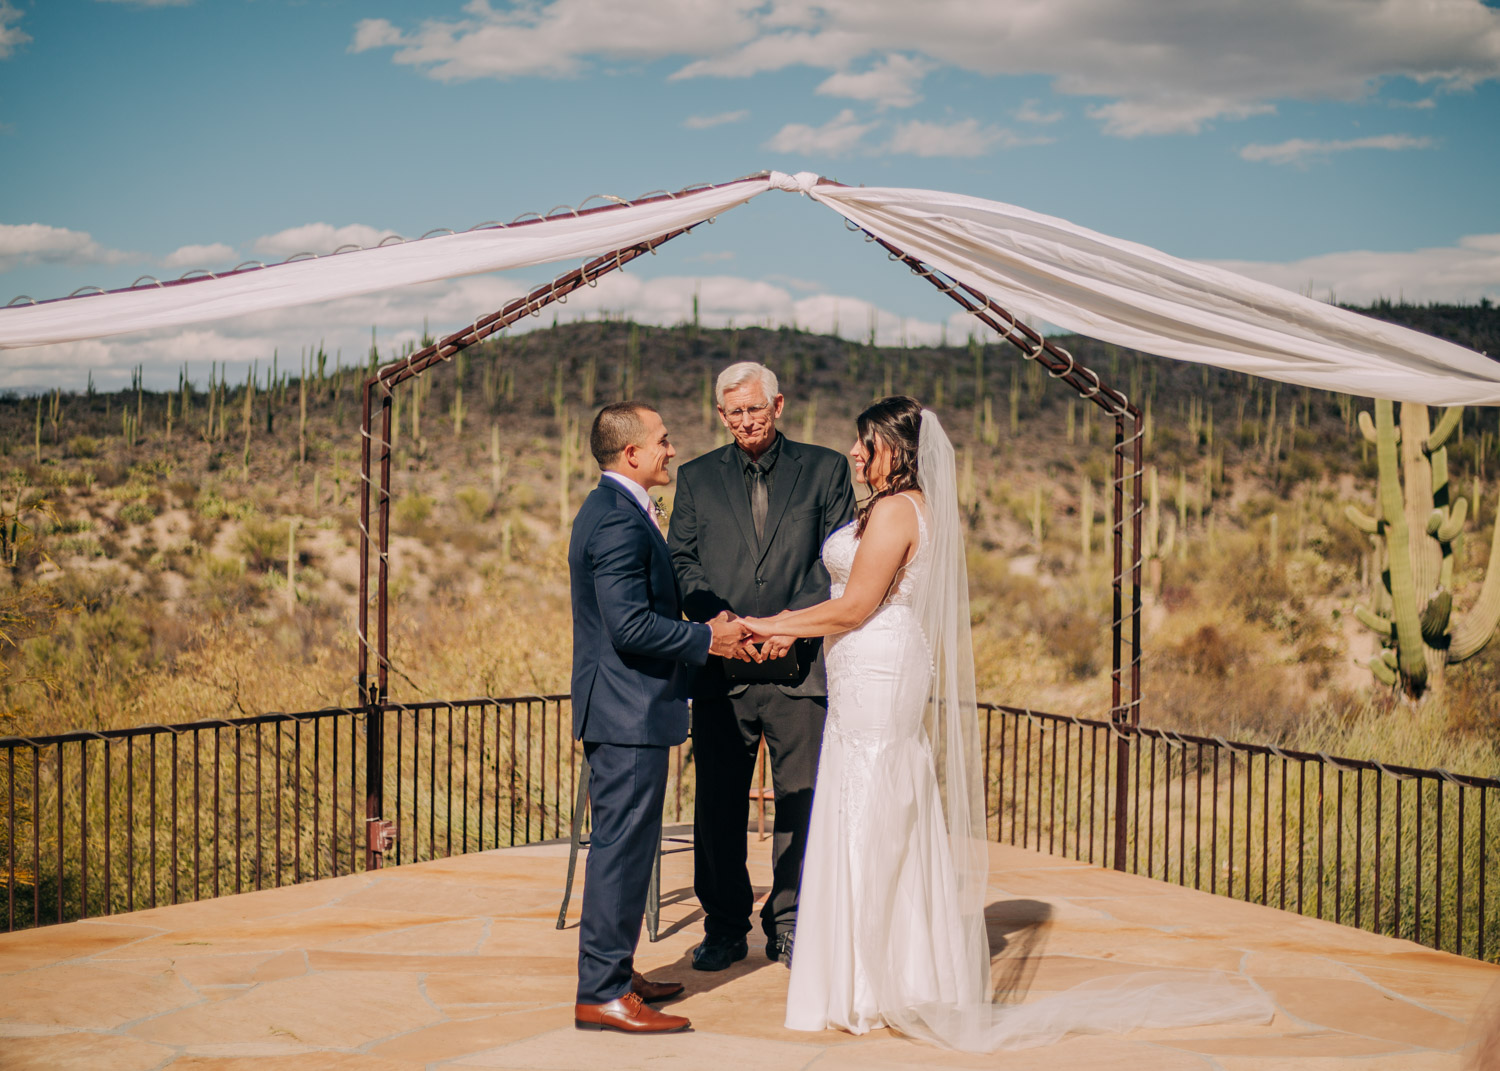 Best-Tucson-Wedding-Venues-Saguaro-Buttes-Tucson-Wedding-Venues-Tucson-Wedding-Photographer-Saguaro-Buttes-Wedding-Ceremony-Wedding-photographer-near-me